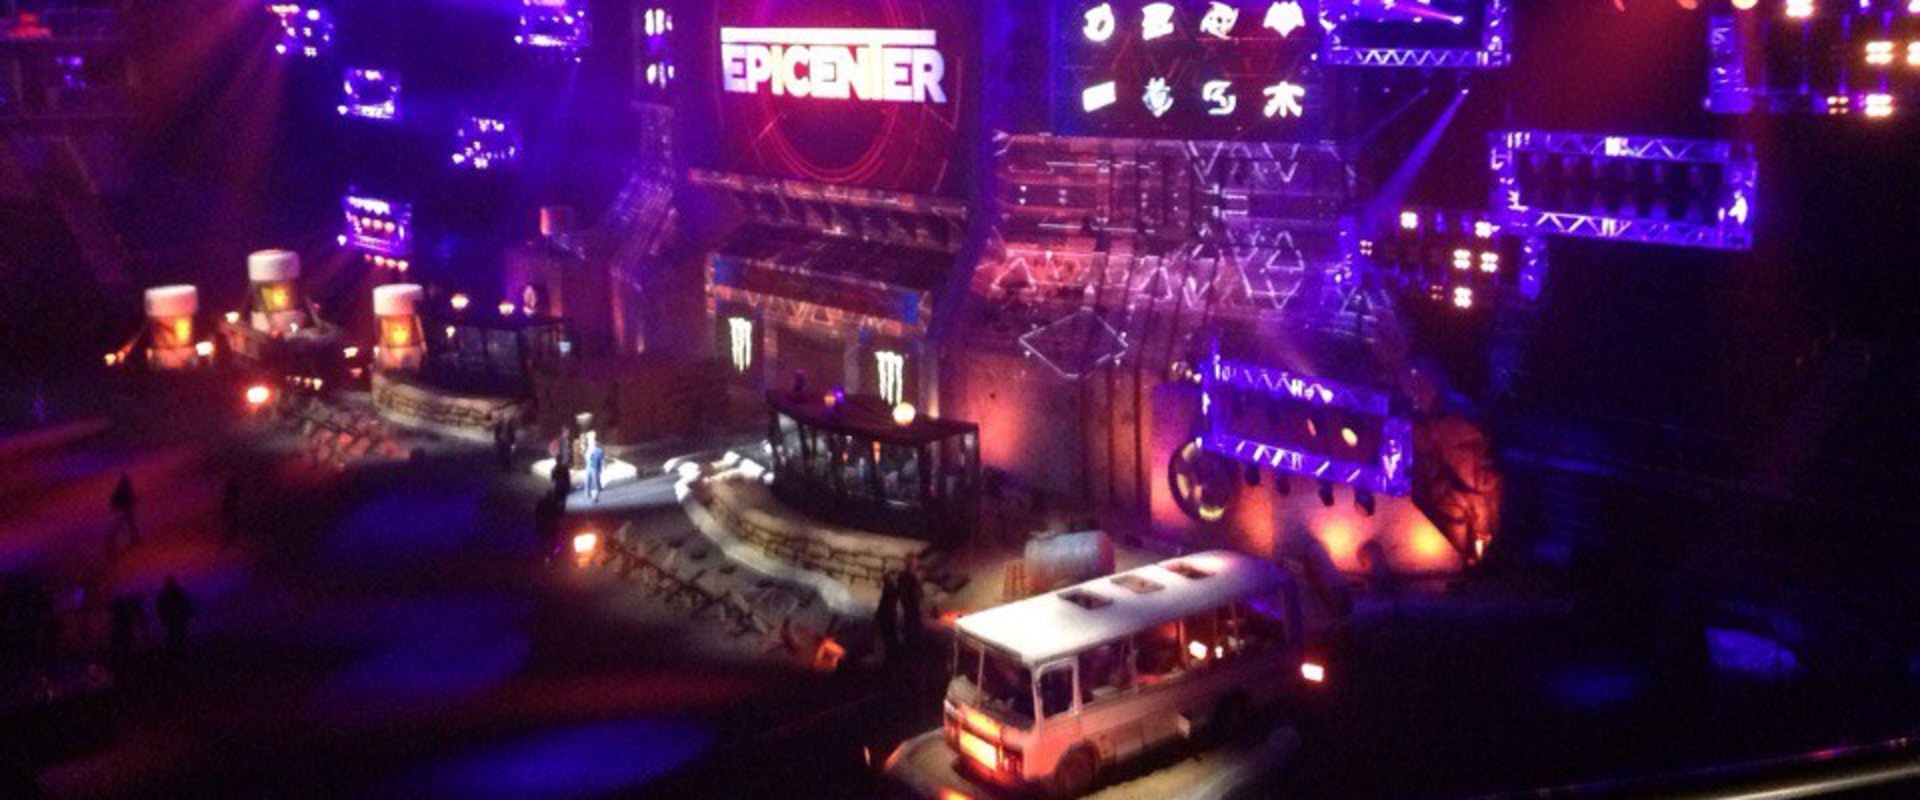 Látványos show műsorral indult az Epicenter rájátszása - KÉPEK